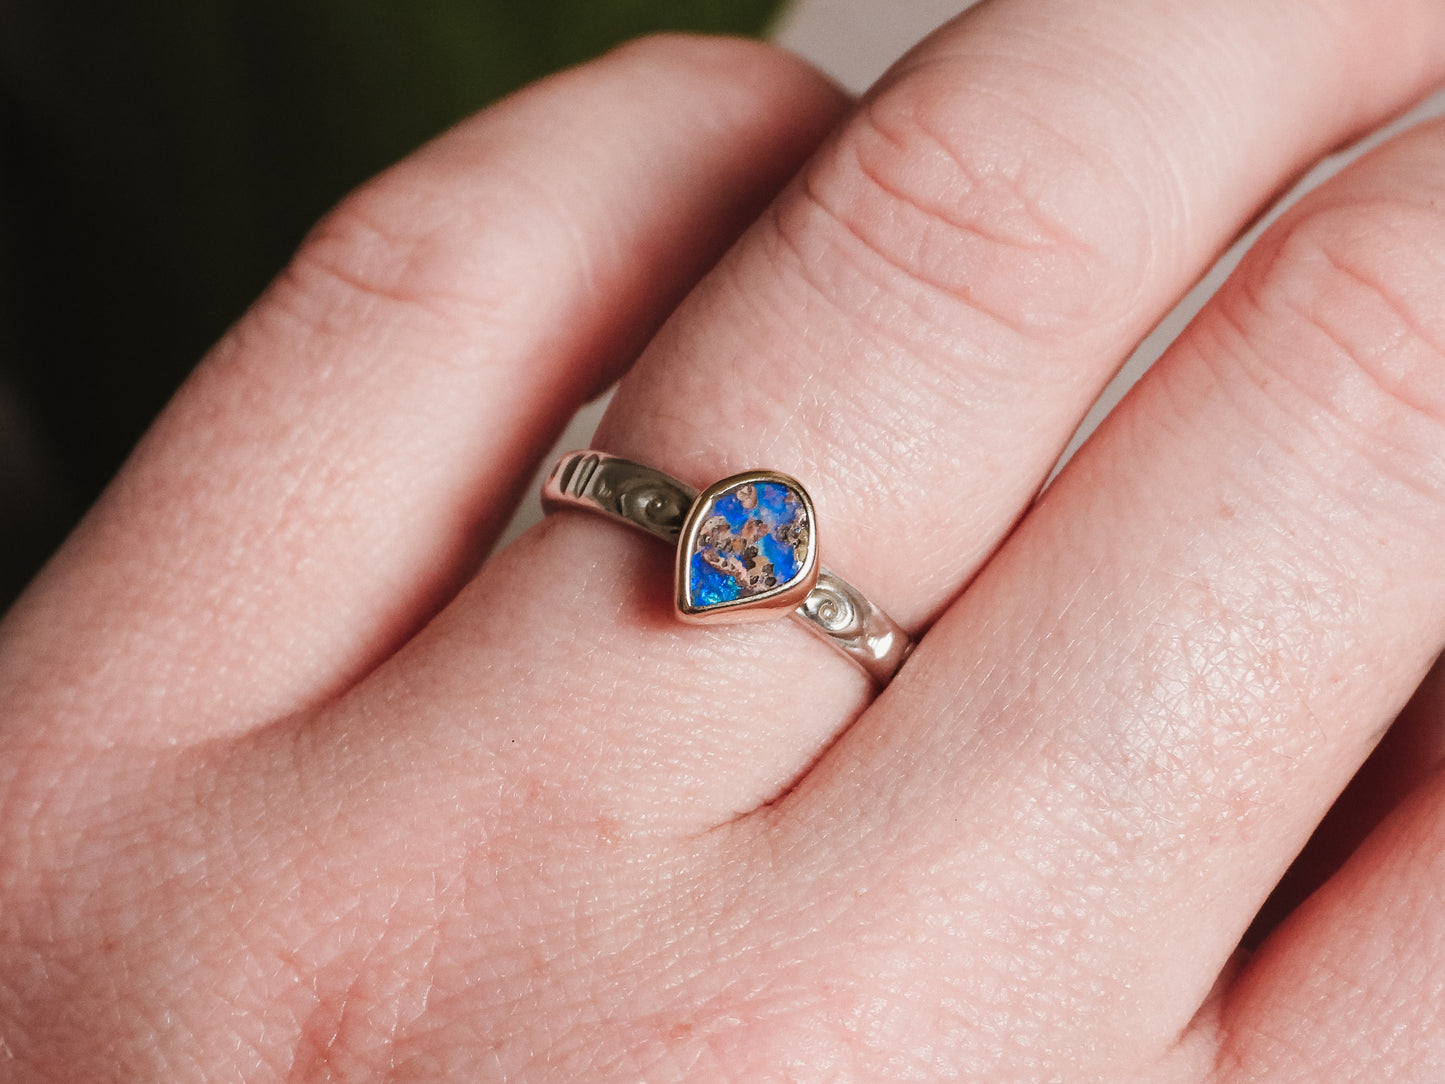 wearing a boho style australian boulder opal ring